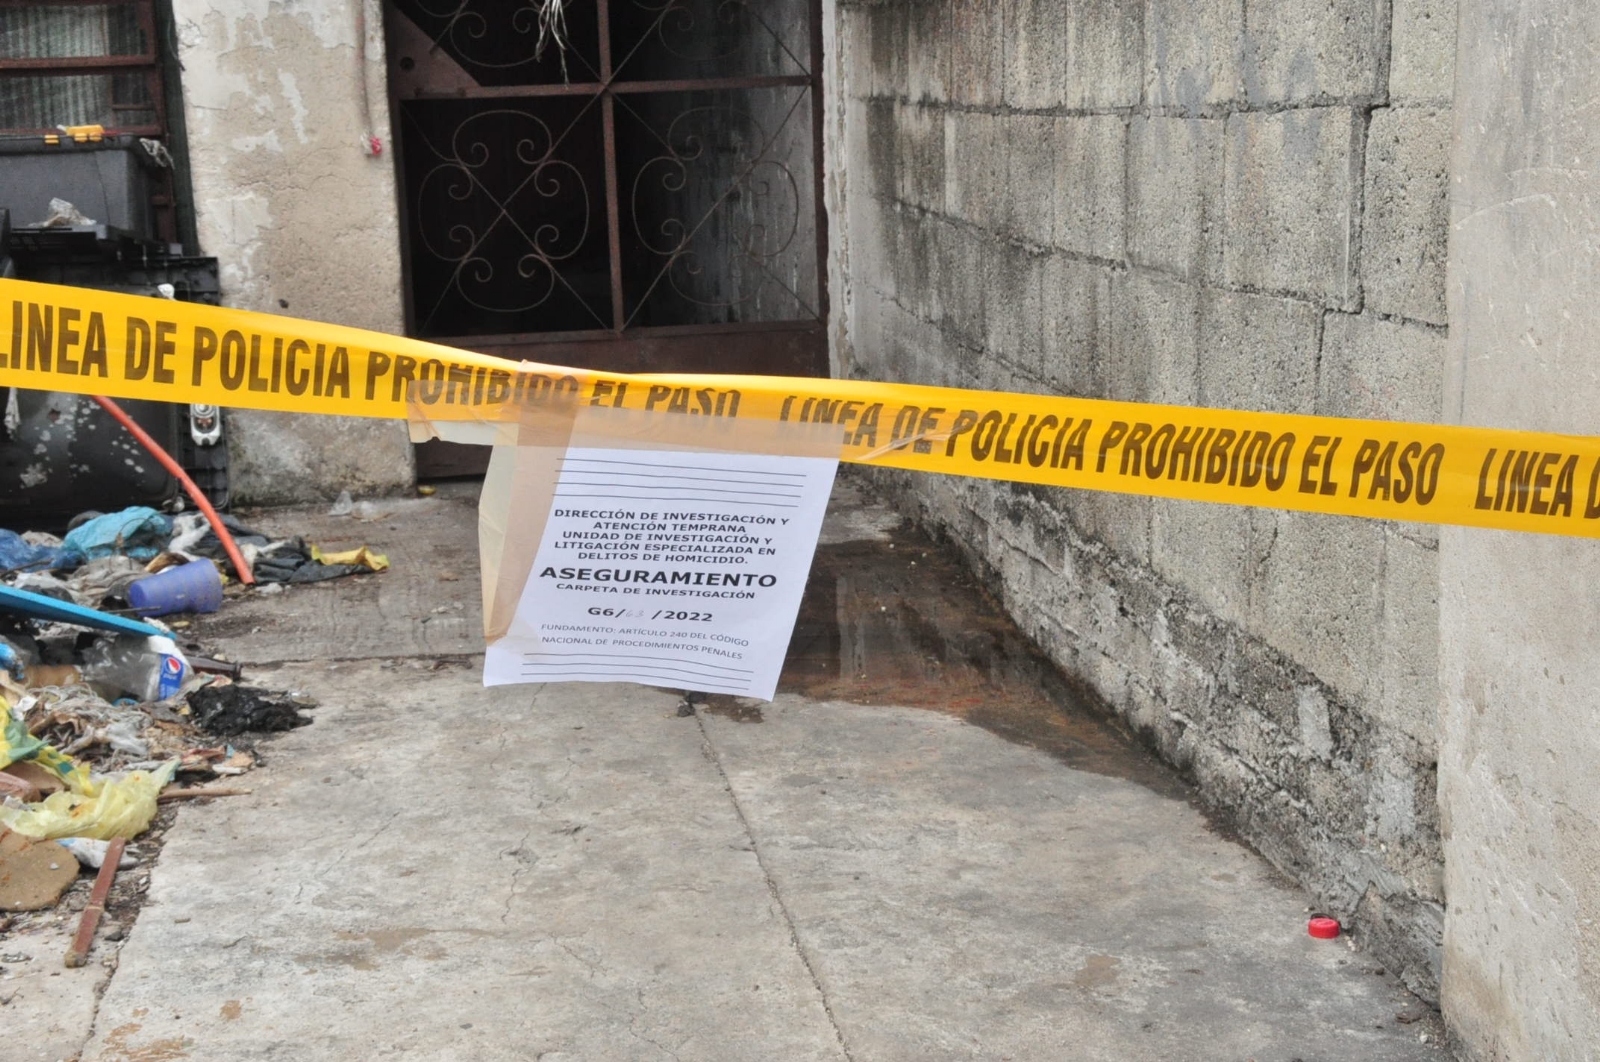 Suicidio en Yucatán: Primer bimestre del 2022 cierra con 36 casos; uno cada segundo día